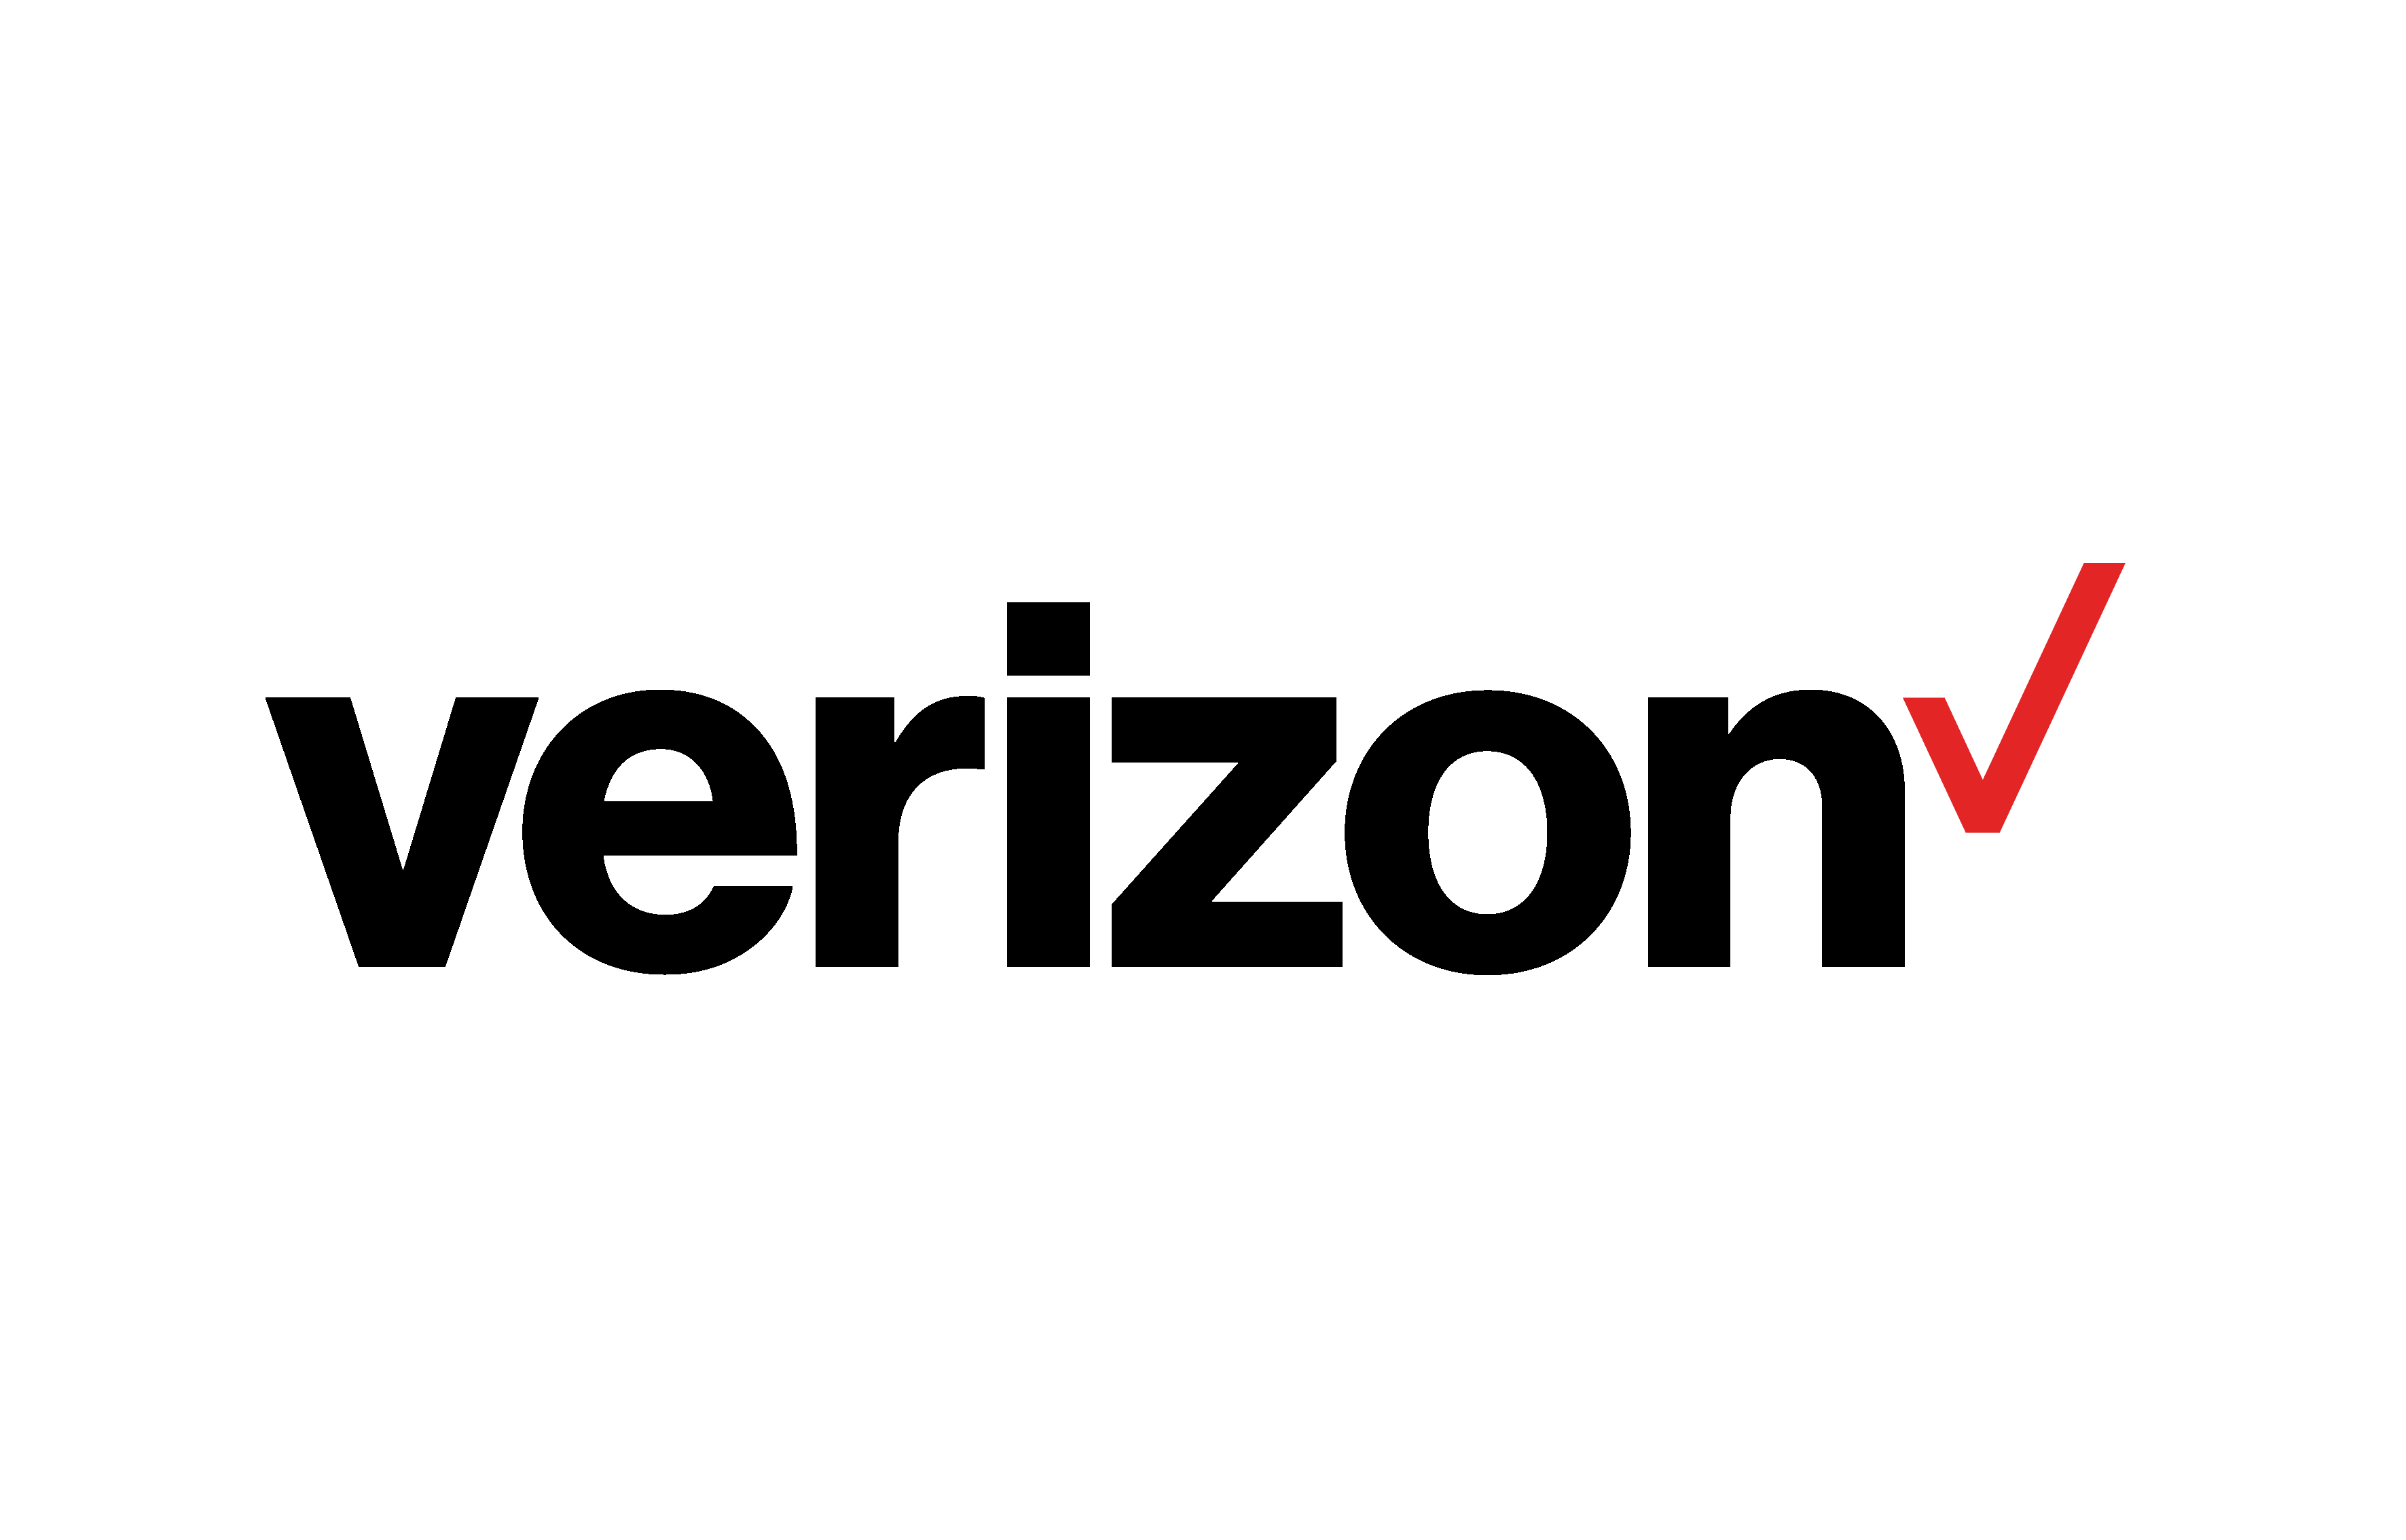 verizon-logo-1